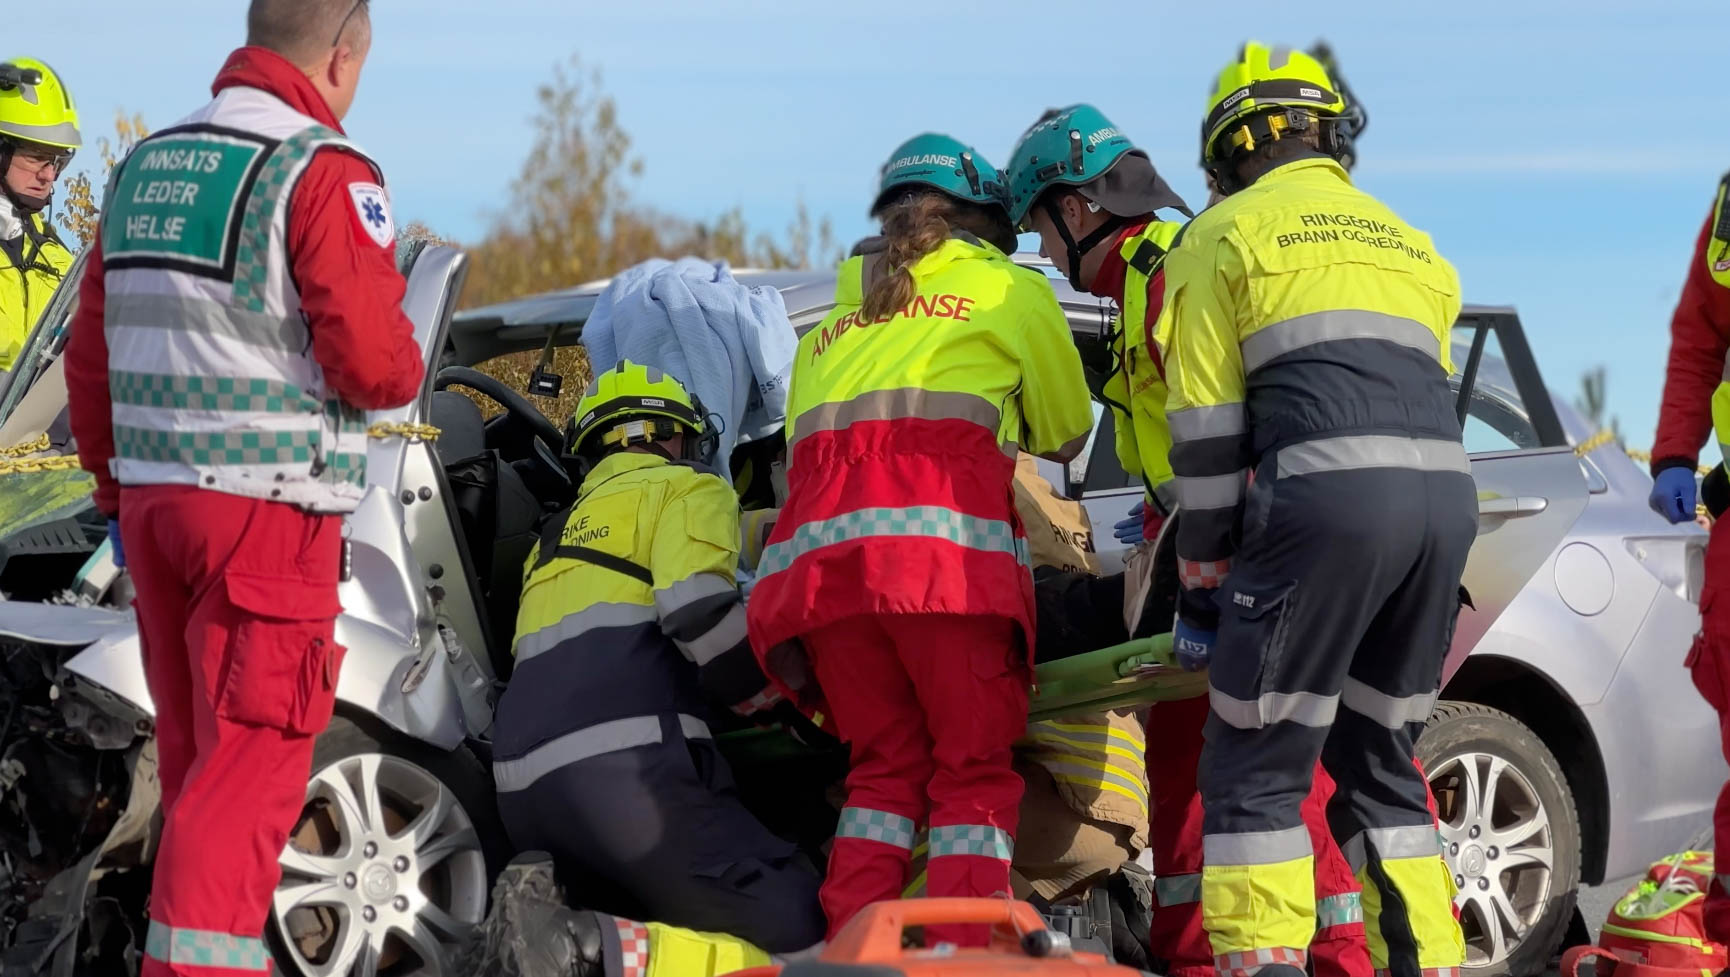 Mens brannmannskaper nå kan få erstatning hvis de skader seg på øvelse, gjenstår ambulansepersonell. Foto: Jørn Finsrud.